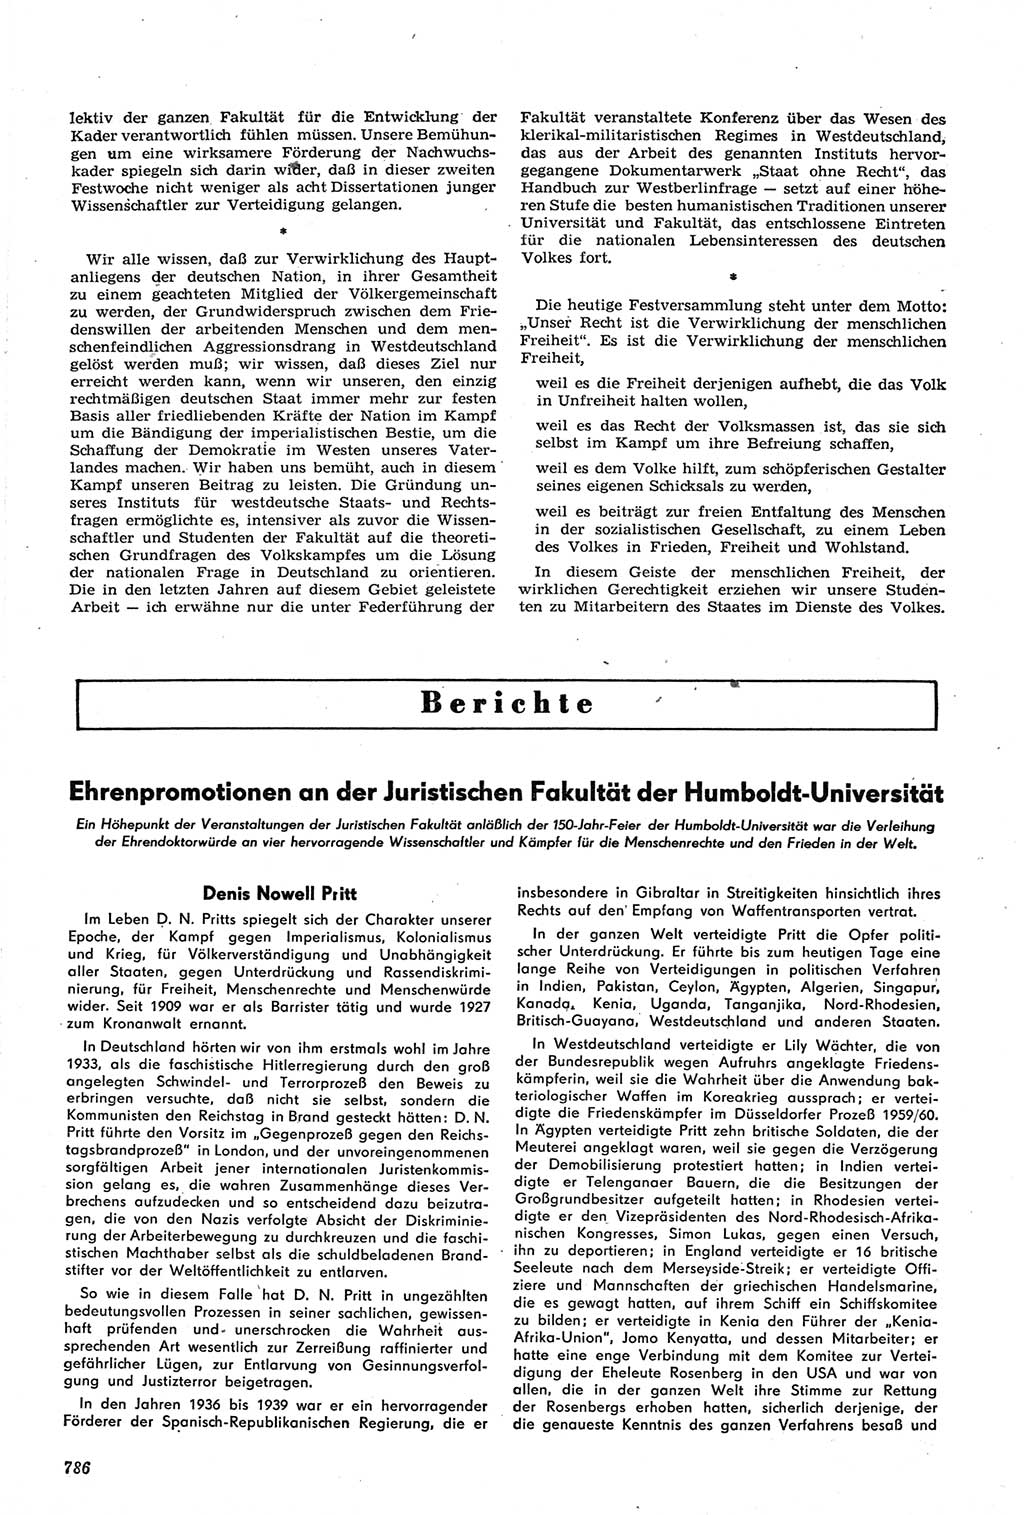 Neue Justiz (NJ), Zeitschrift für Recht und Rechtswissenschaft [Deutsche Demokratische Republik (DDR)], 14. Jahrgang 1960, Seite 786 (NJ DDR 1960, S. 786)